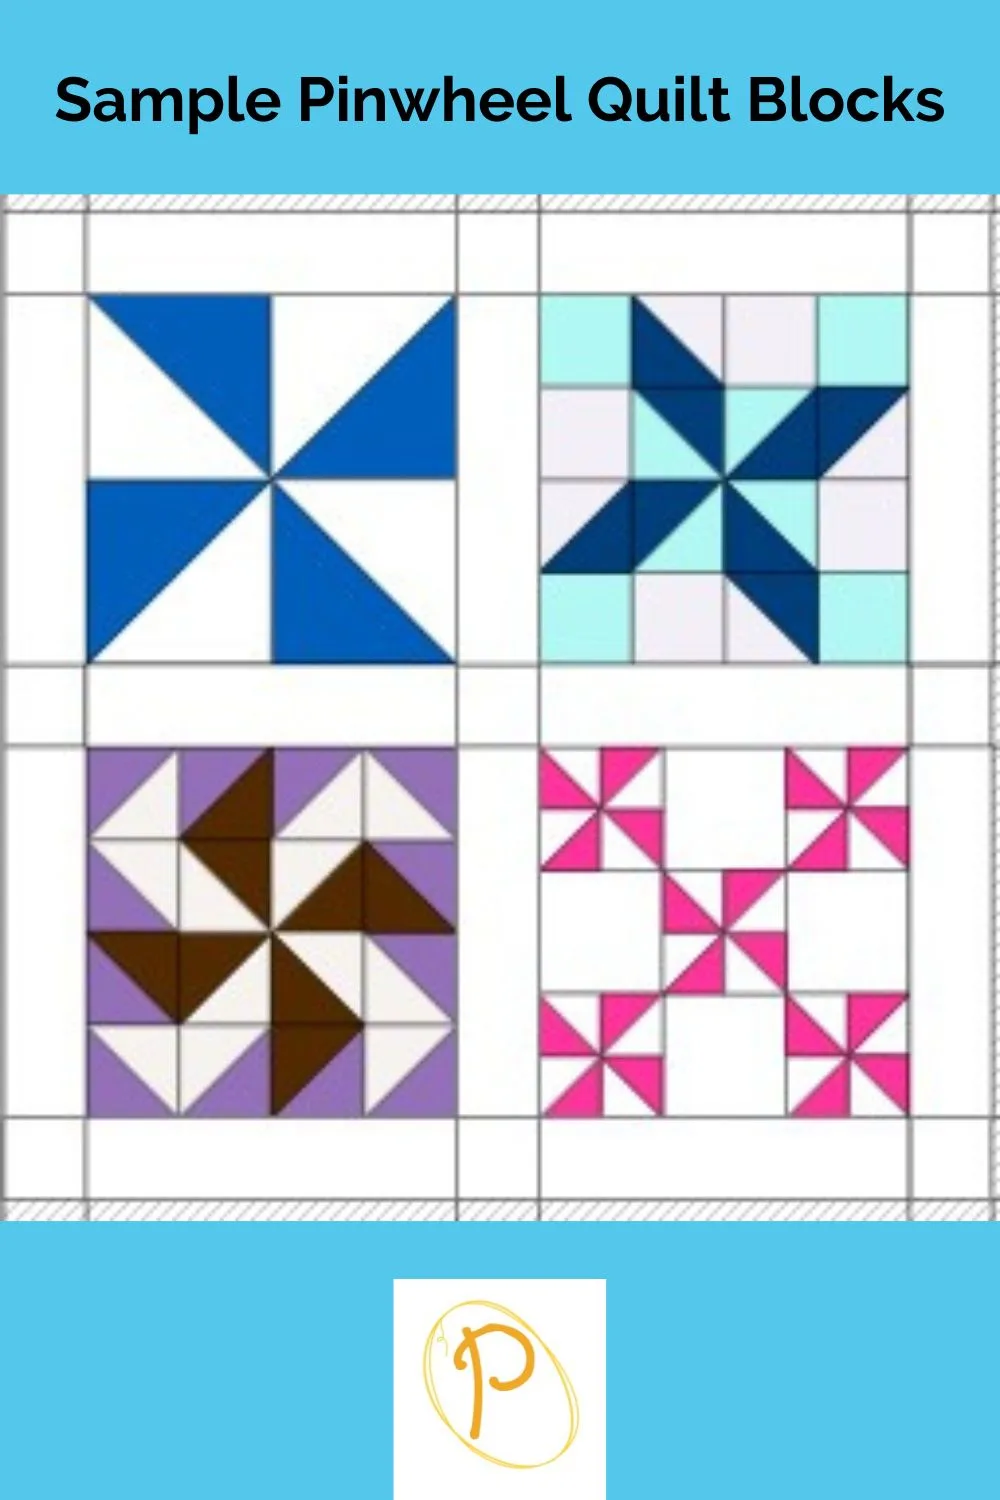 Sample Pinwheel Quilt Blocks